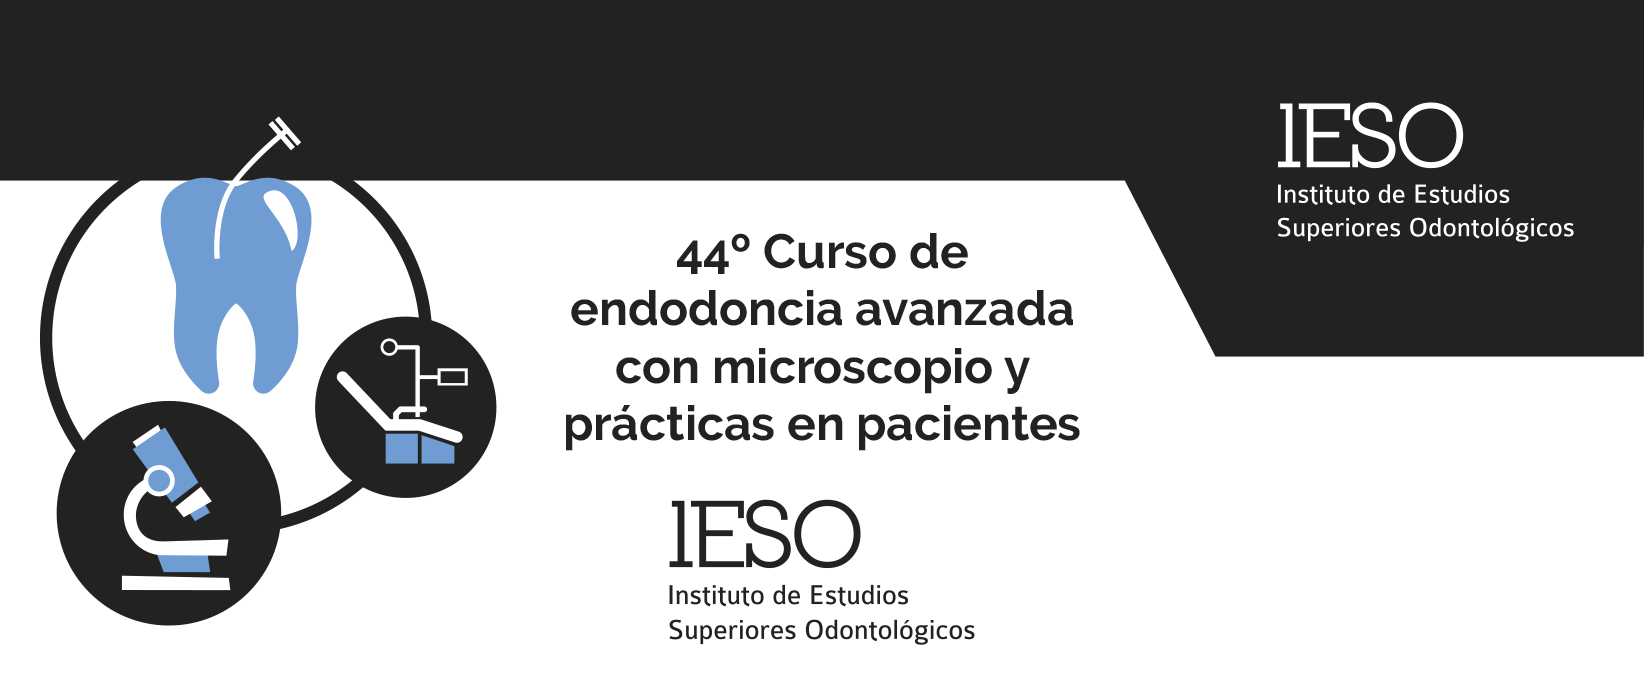 44º Curso de endodoncia avanzada con microscopio y prácticas en pacientes del Instituto IESO